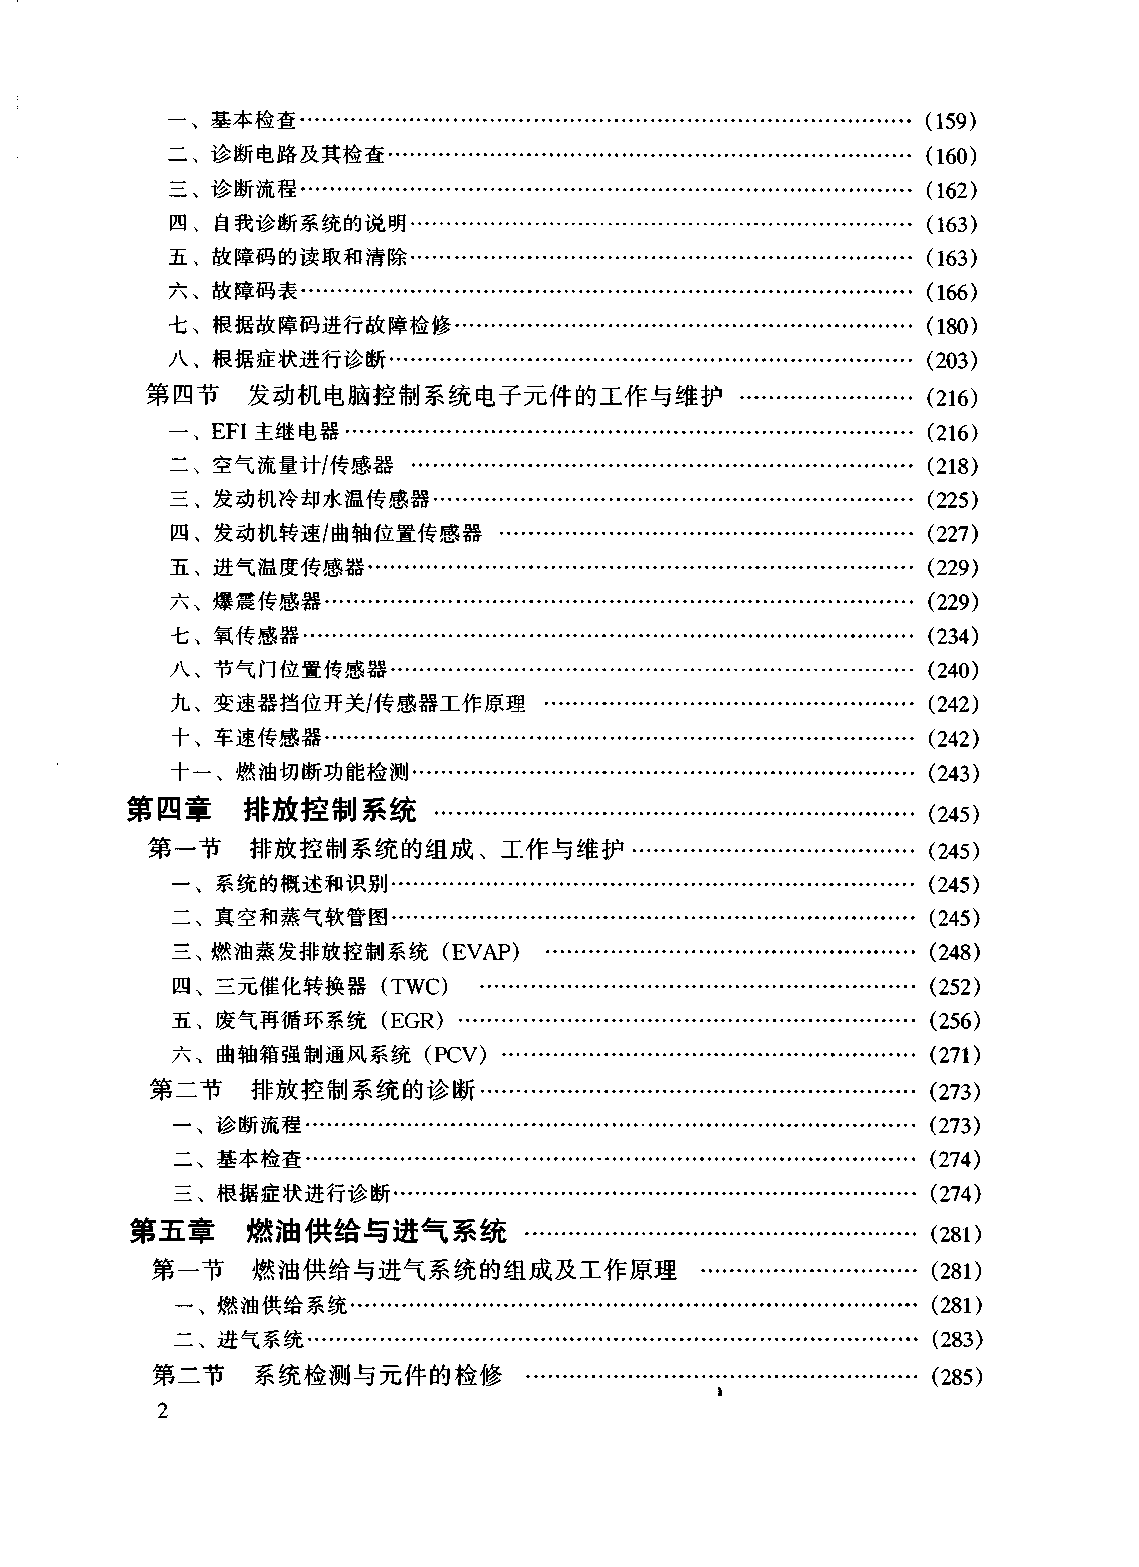 佳美维修手册 粤科1999D (2).pdf-第3页.png